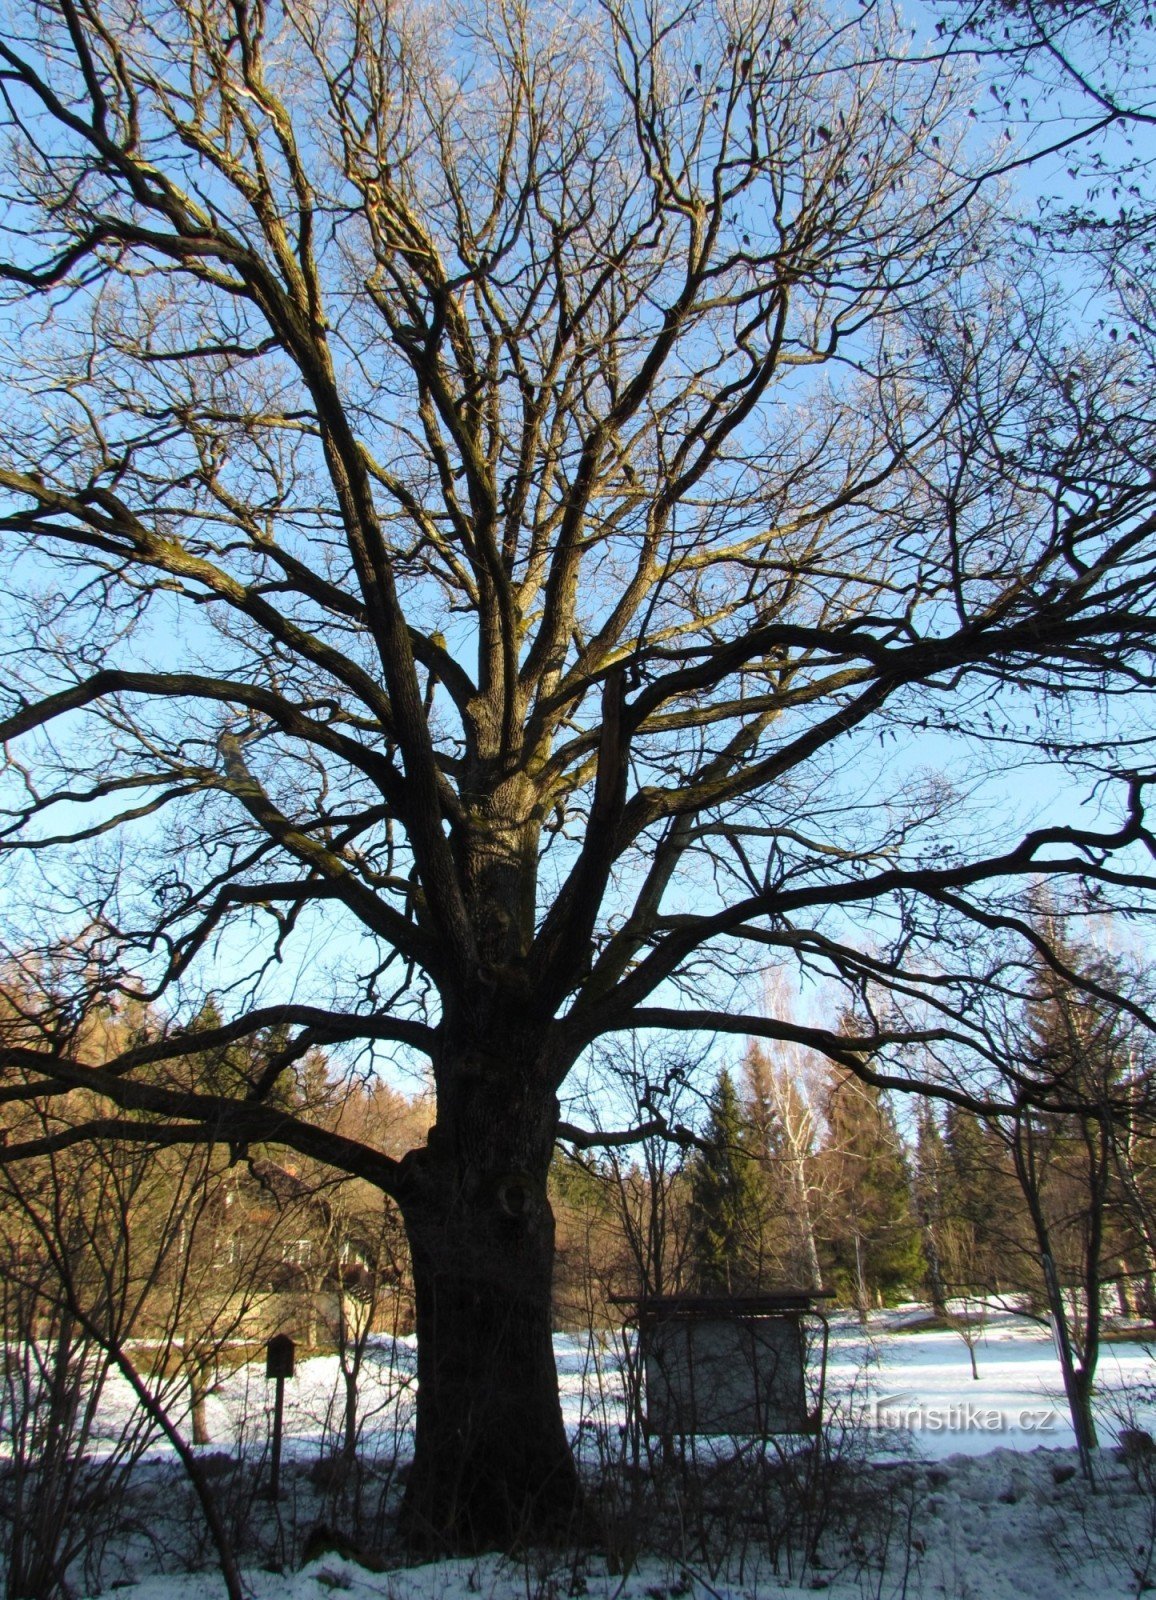 Ở Valašky - cây sồi mùa đông